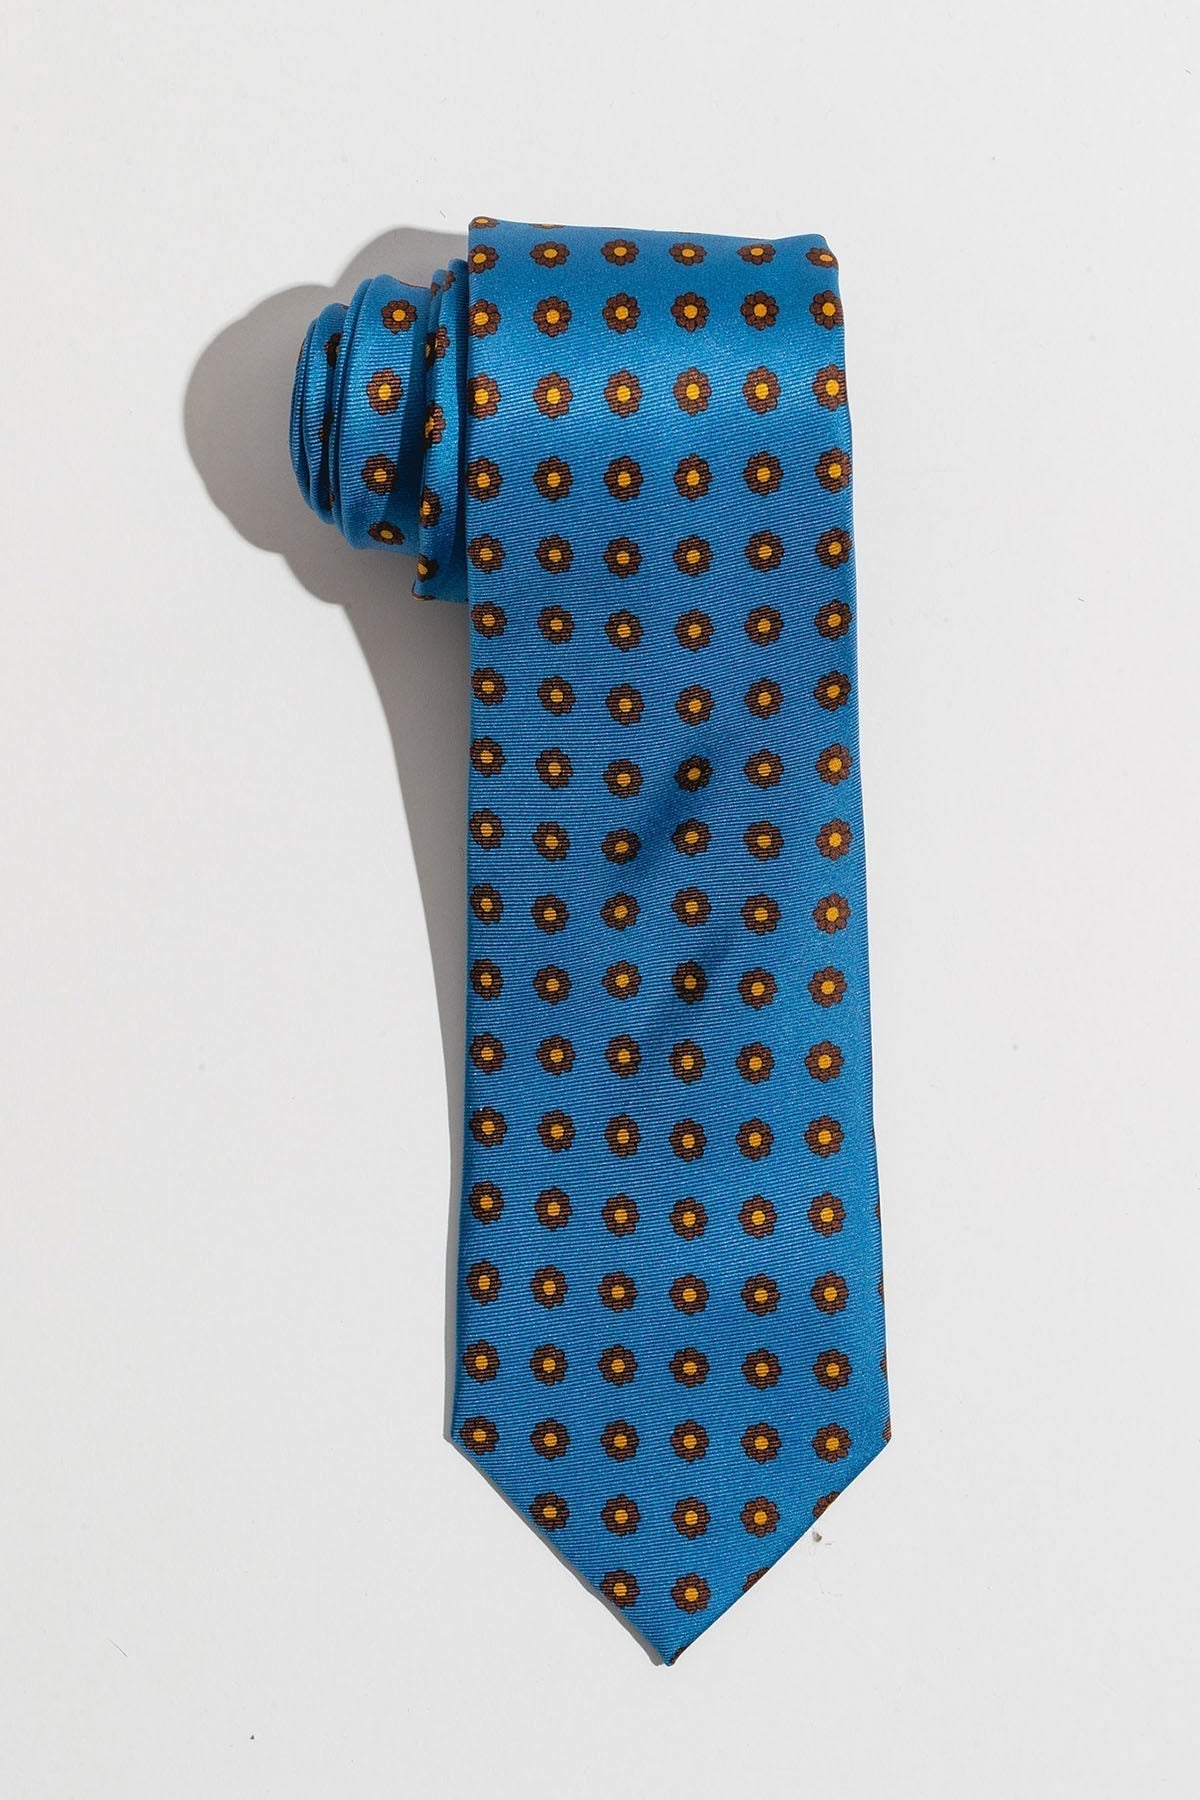 An ivy Slips Light Blue Flower Silk Tie